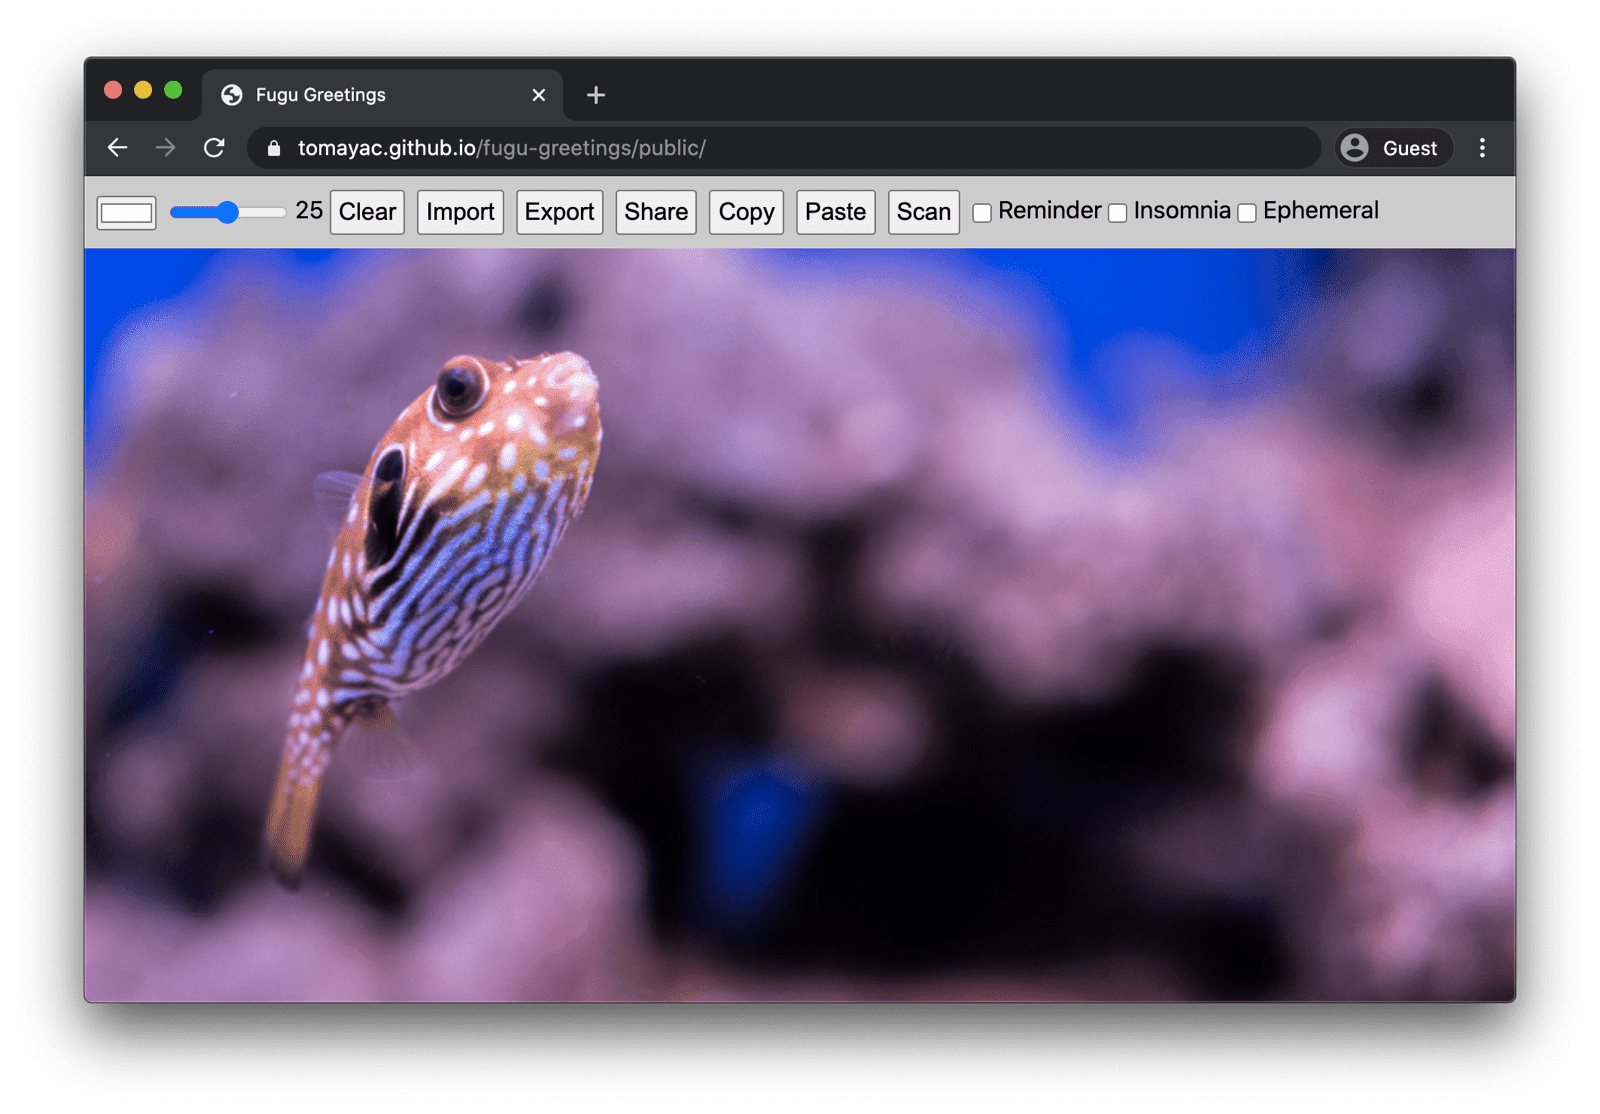 Se están ejecutando los saludos de Fugu en la versión de Chrome para computadoras. Se muestran muchas funciones disponibles.